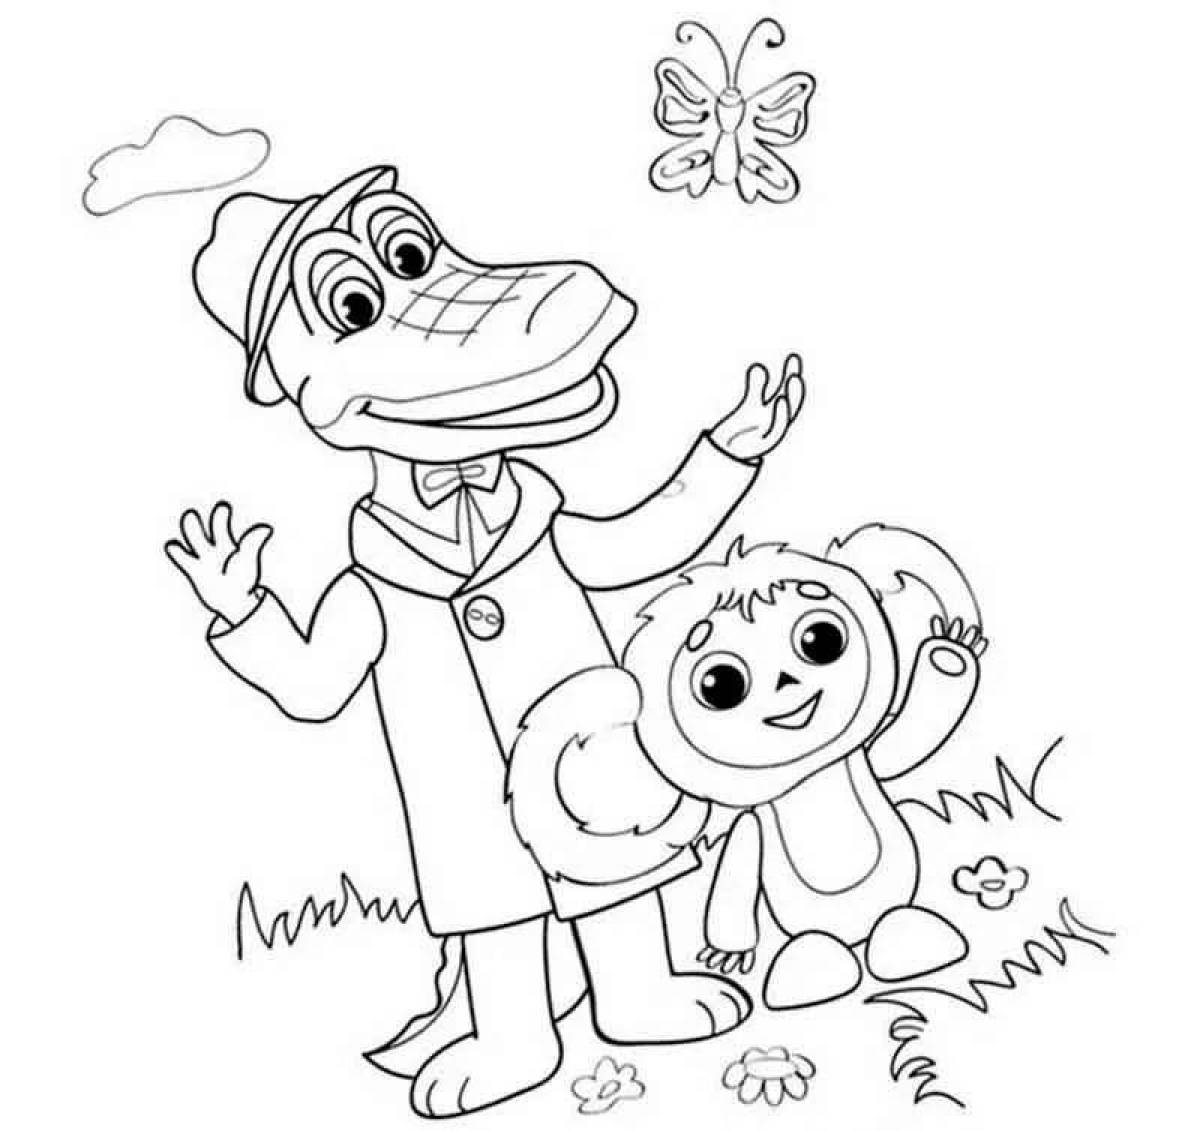 Joyful cheburashka coloring book for kids